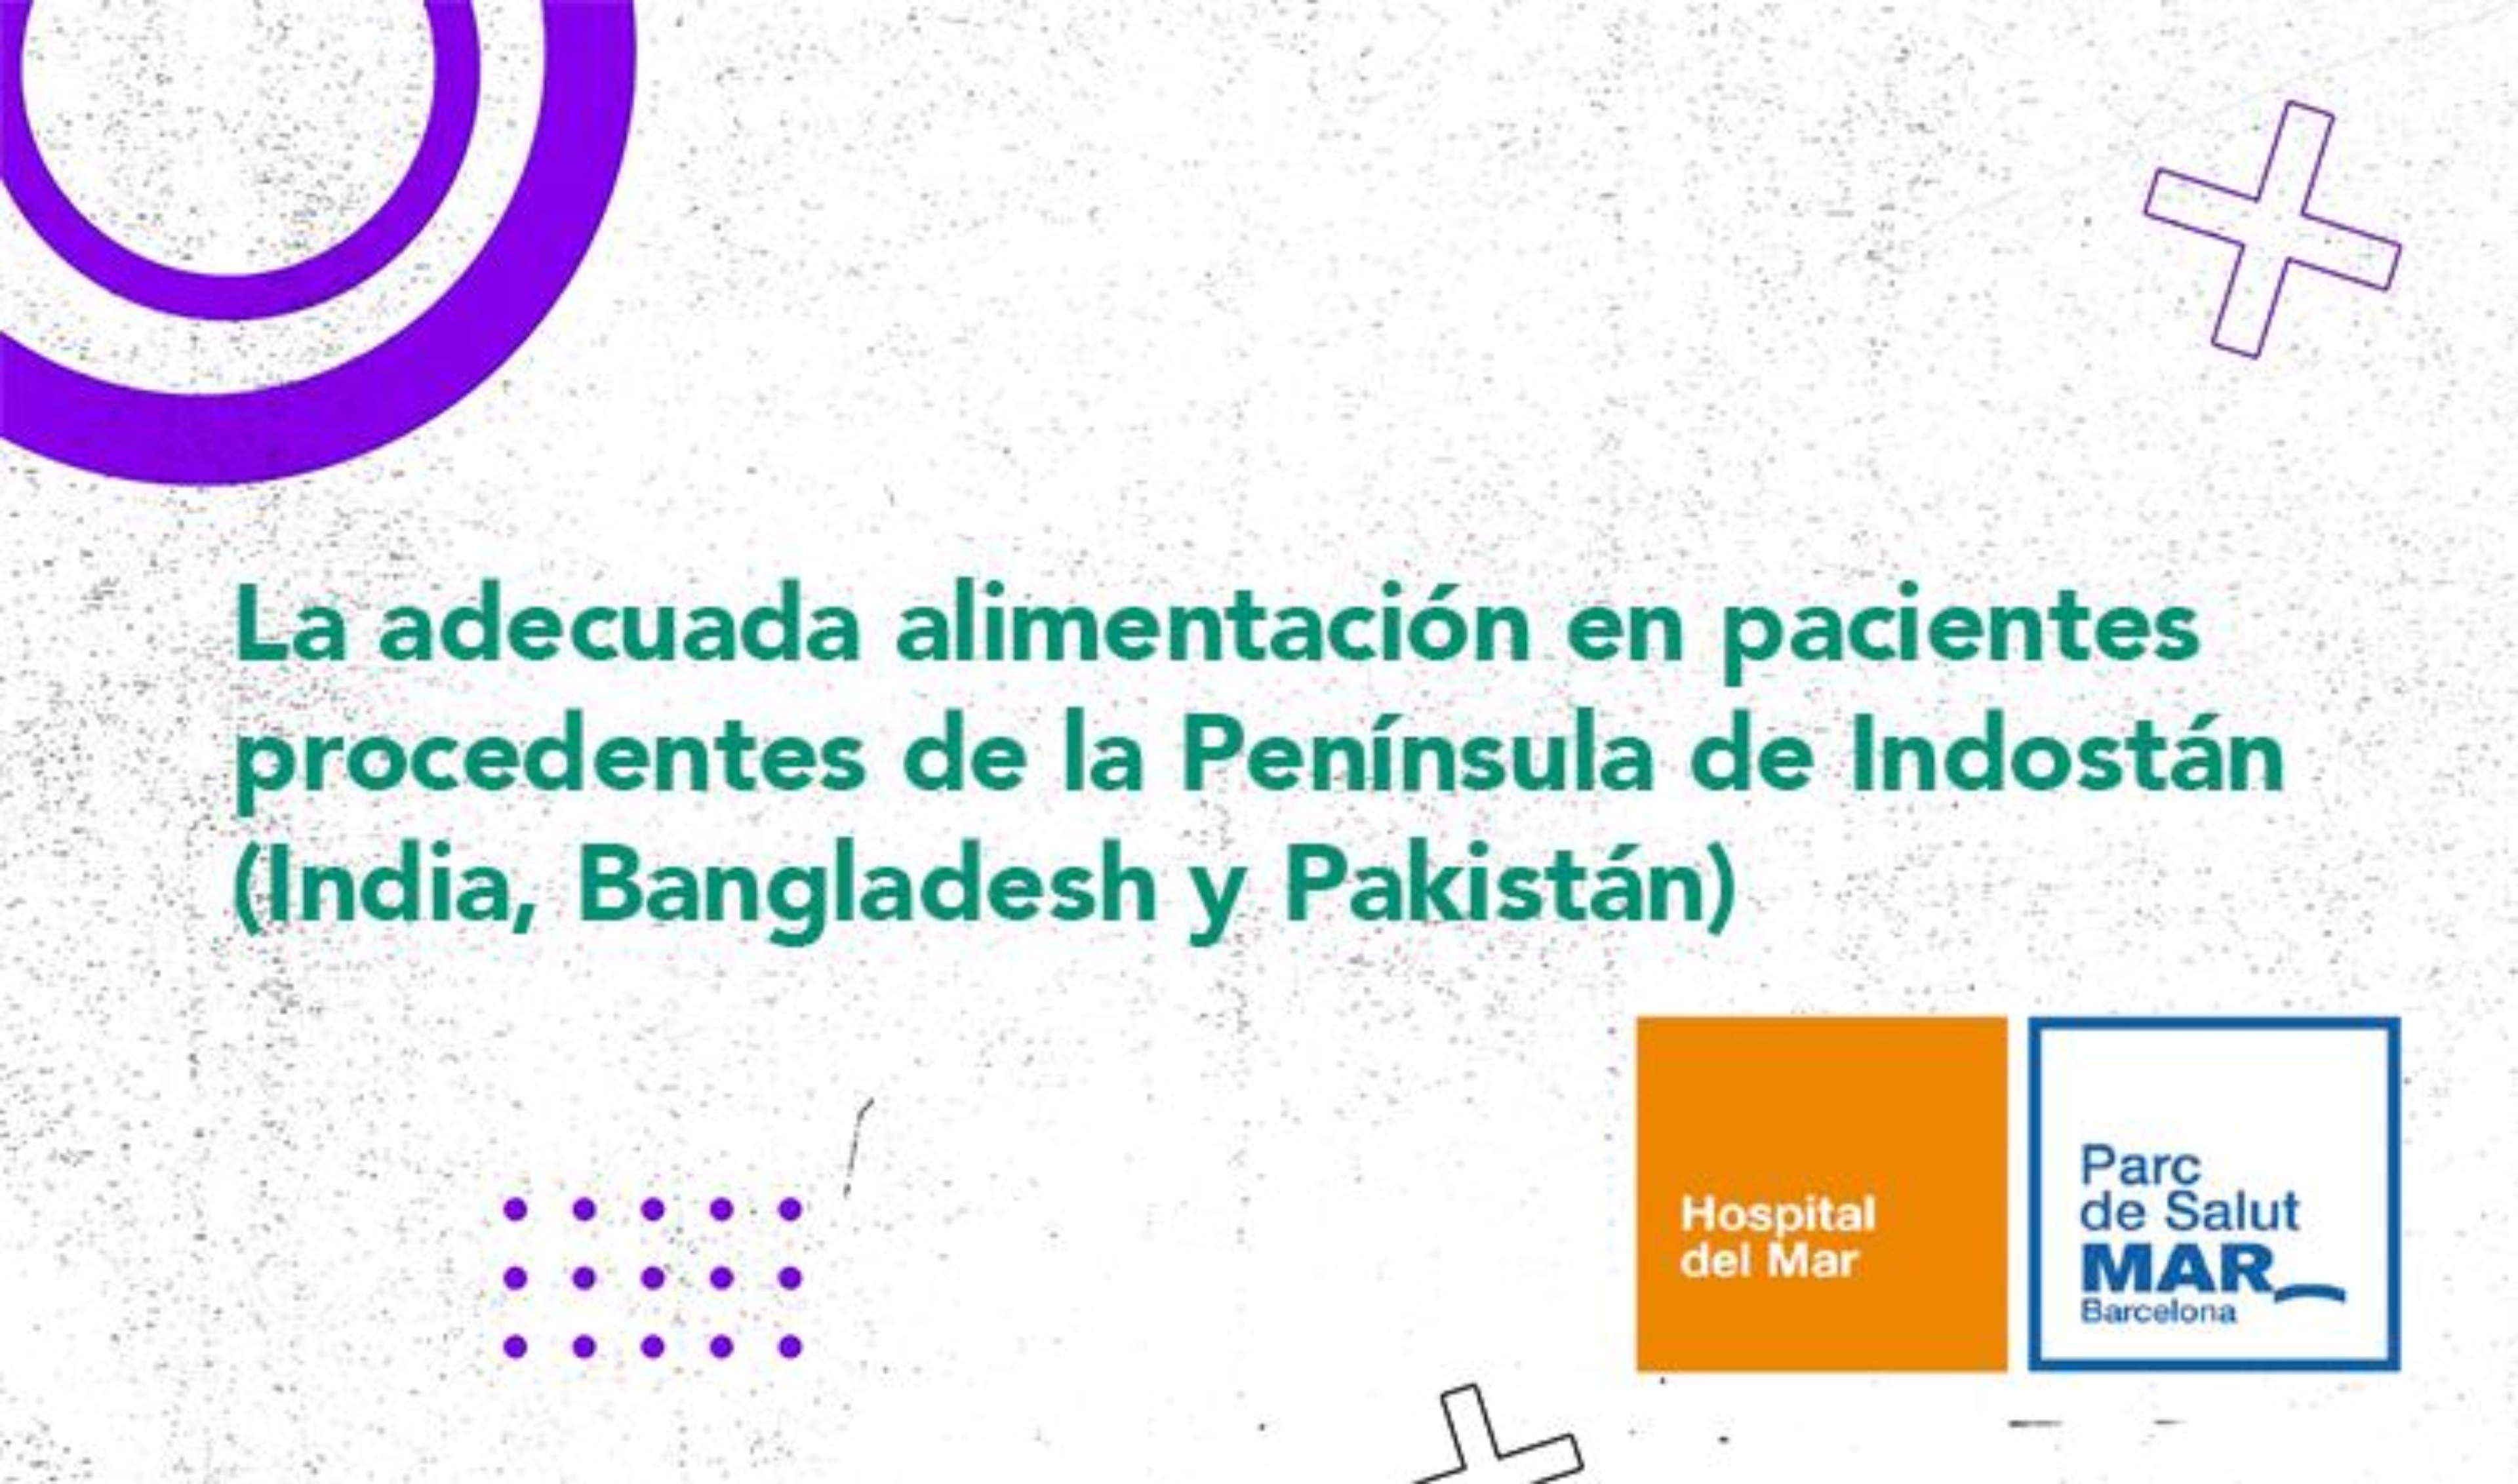 La adecuada alimentación en pacientes procedentes de la Península de Indostán (India, Bangladesh y Pakistán)